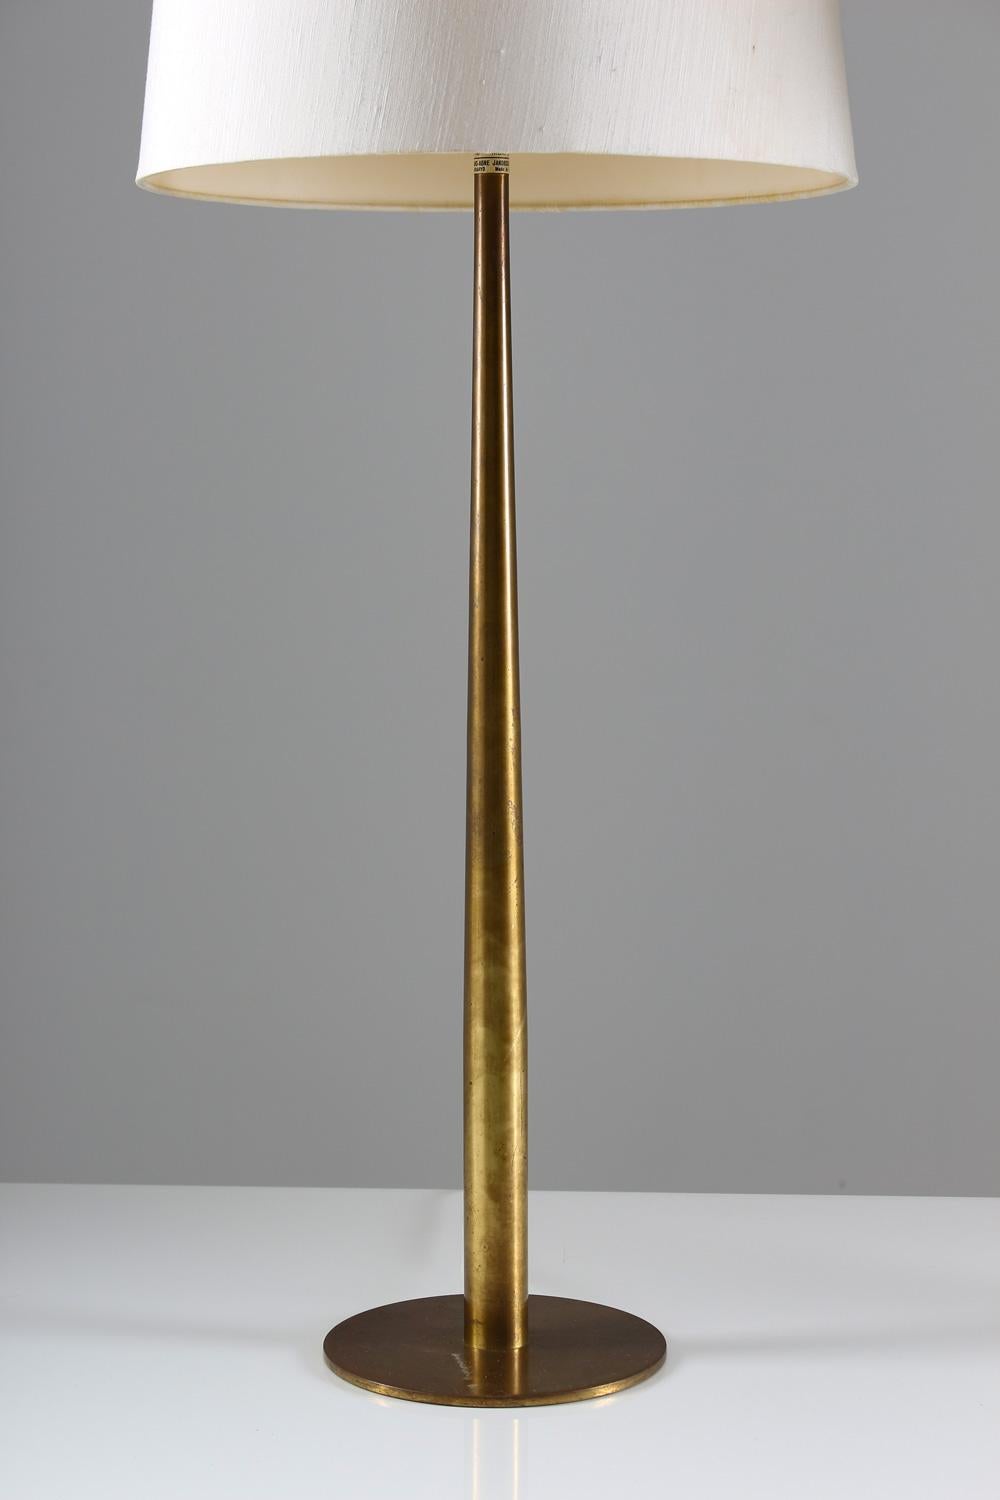 Scandinavian Modern Early Midcentury Table Lamps B86 in Brass by Hans-Agne Jakobsson